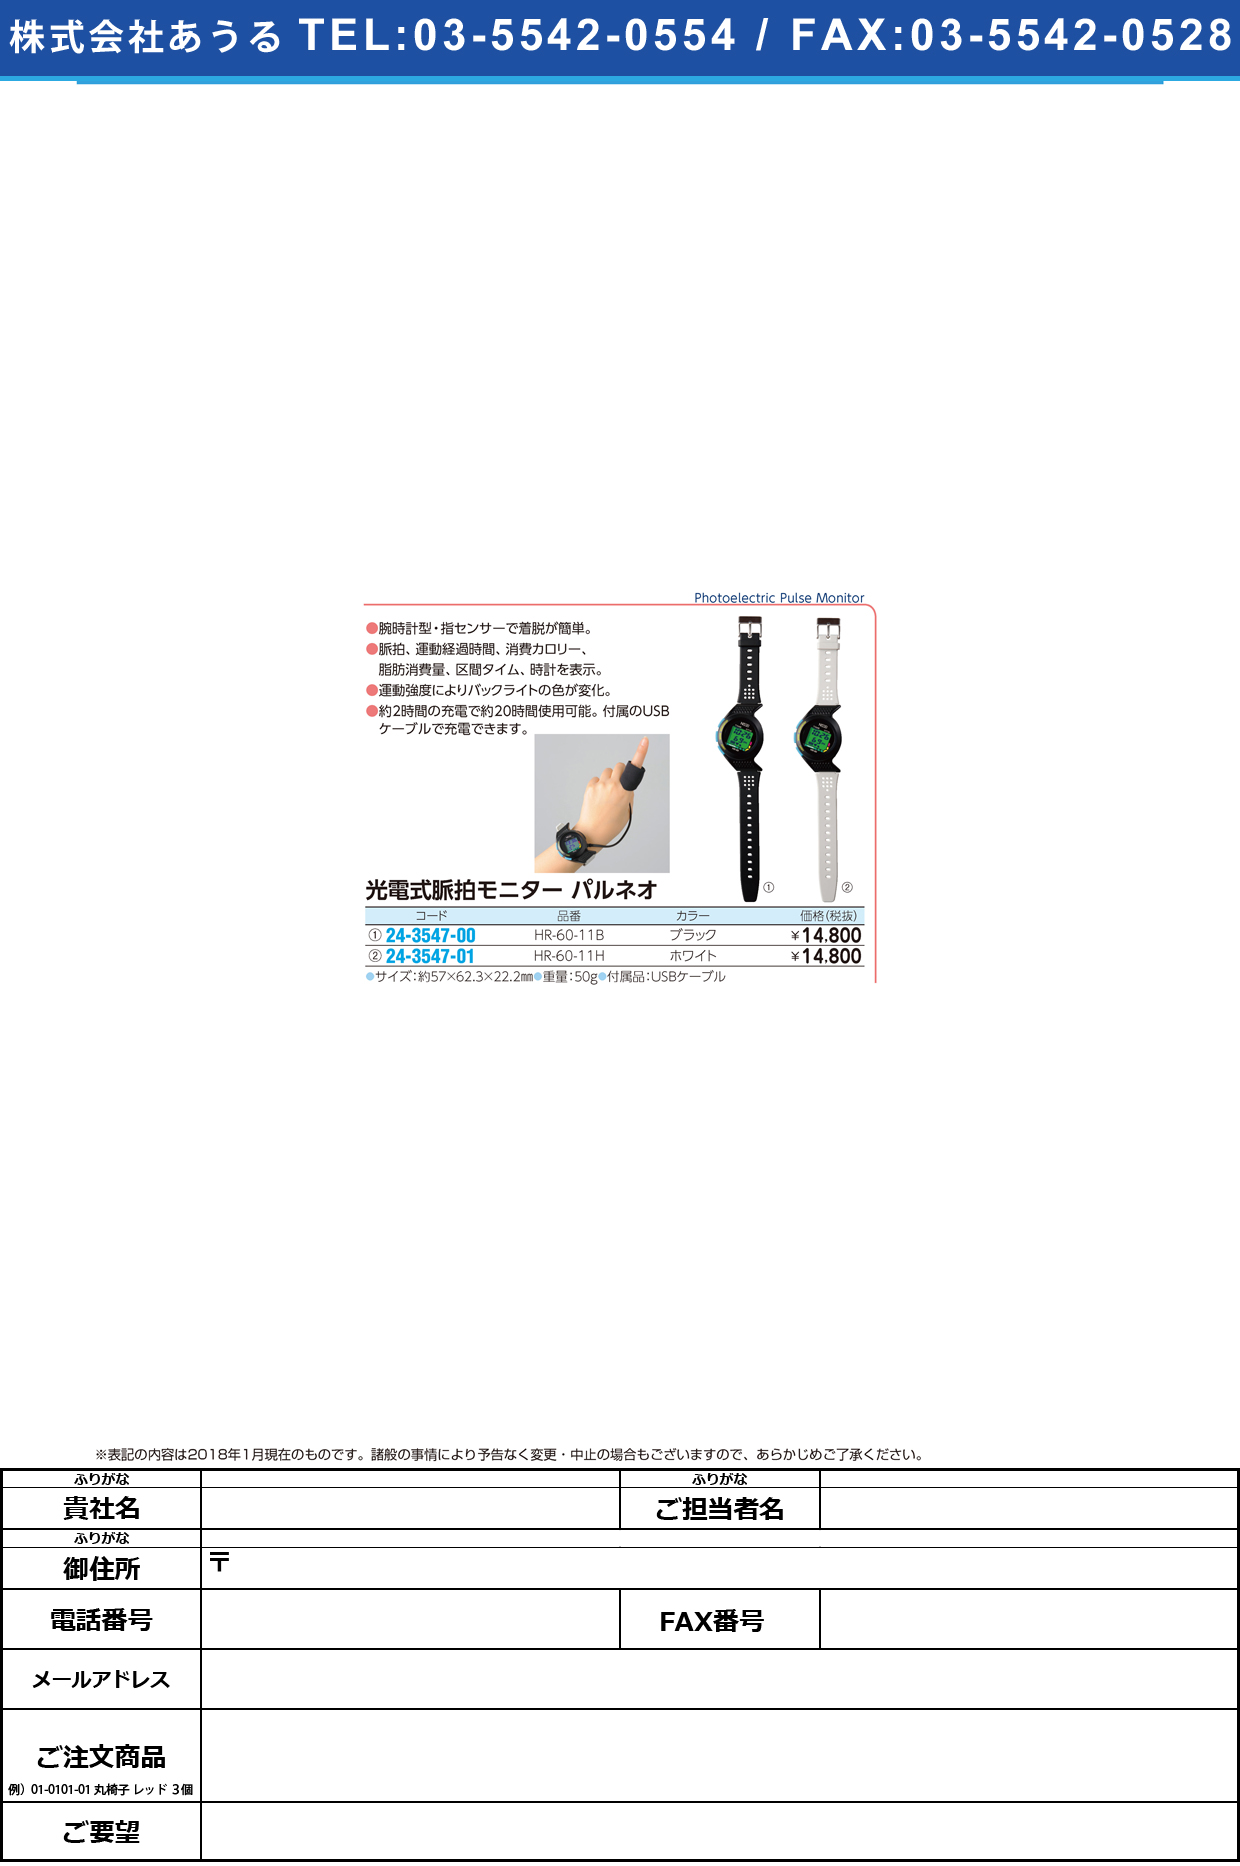 光電式脈拍モニターパルネオ HR-60-11H(ﾎﾜｲﾄ) ﾊﾟﾙﾈｵ(日本精密測器)